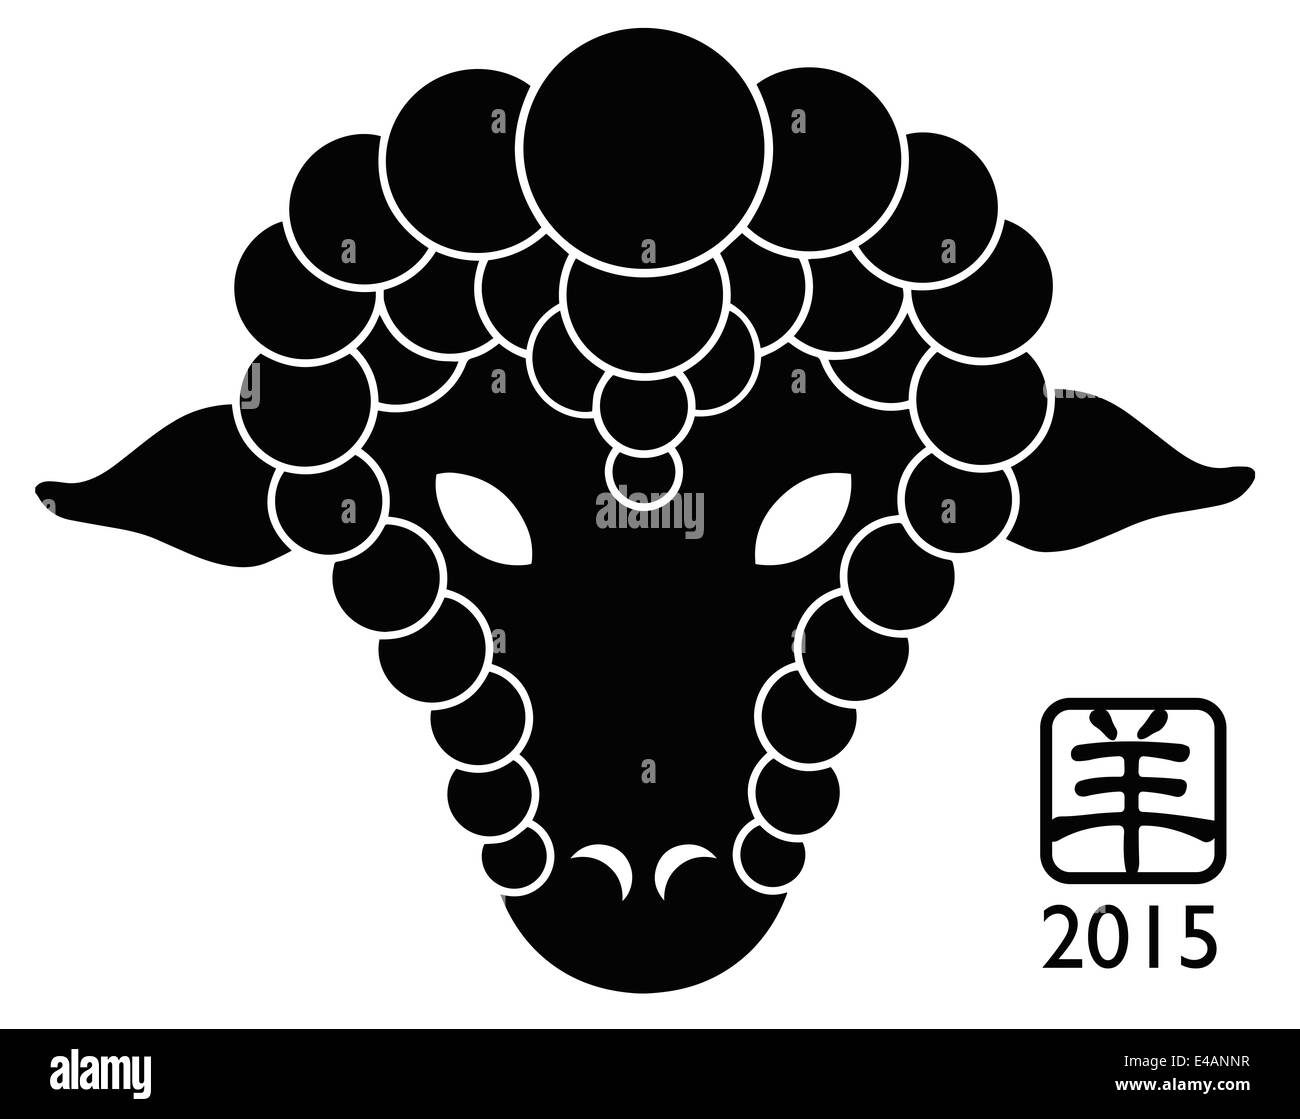 2015 Anno Nuovo Cinese della pecora silhouette nera isolato su sfondo bianco con testo in cinese simbolo di capra Foto Stock